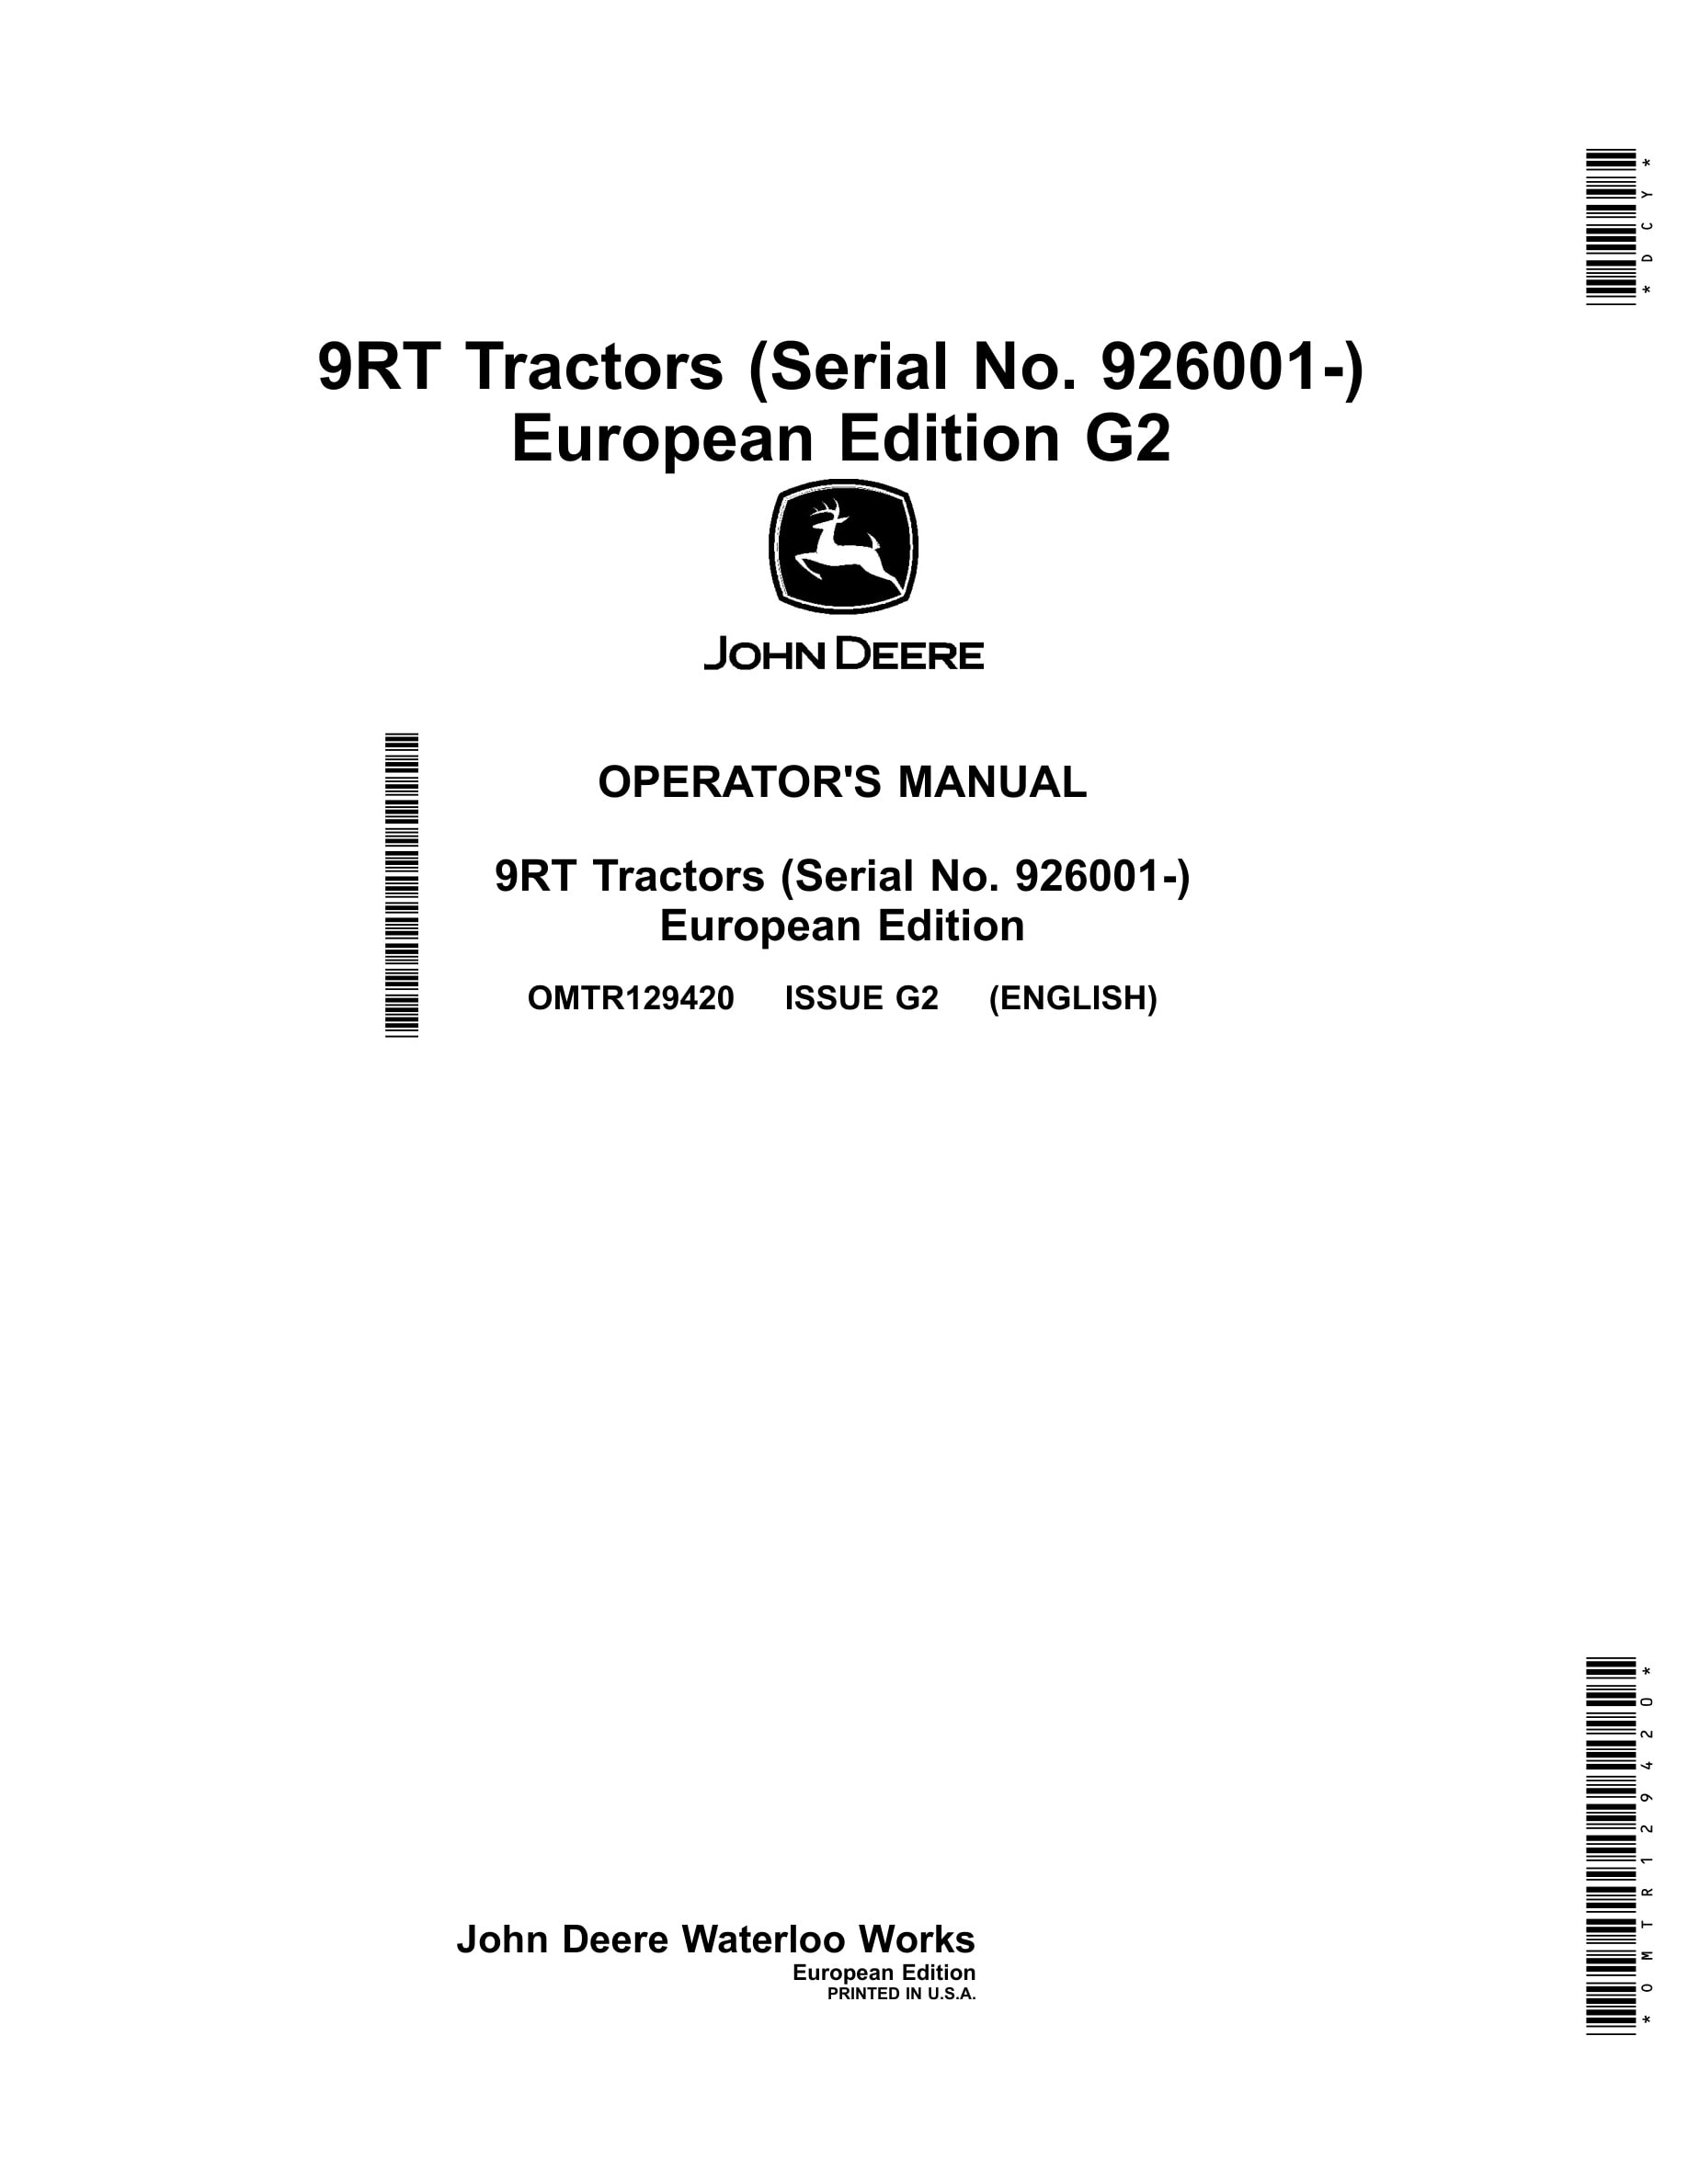 John Deere 9rt Tractors Operator Manuals OMTR129420-1